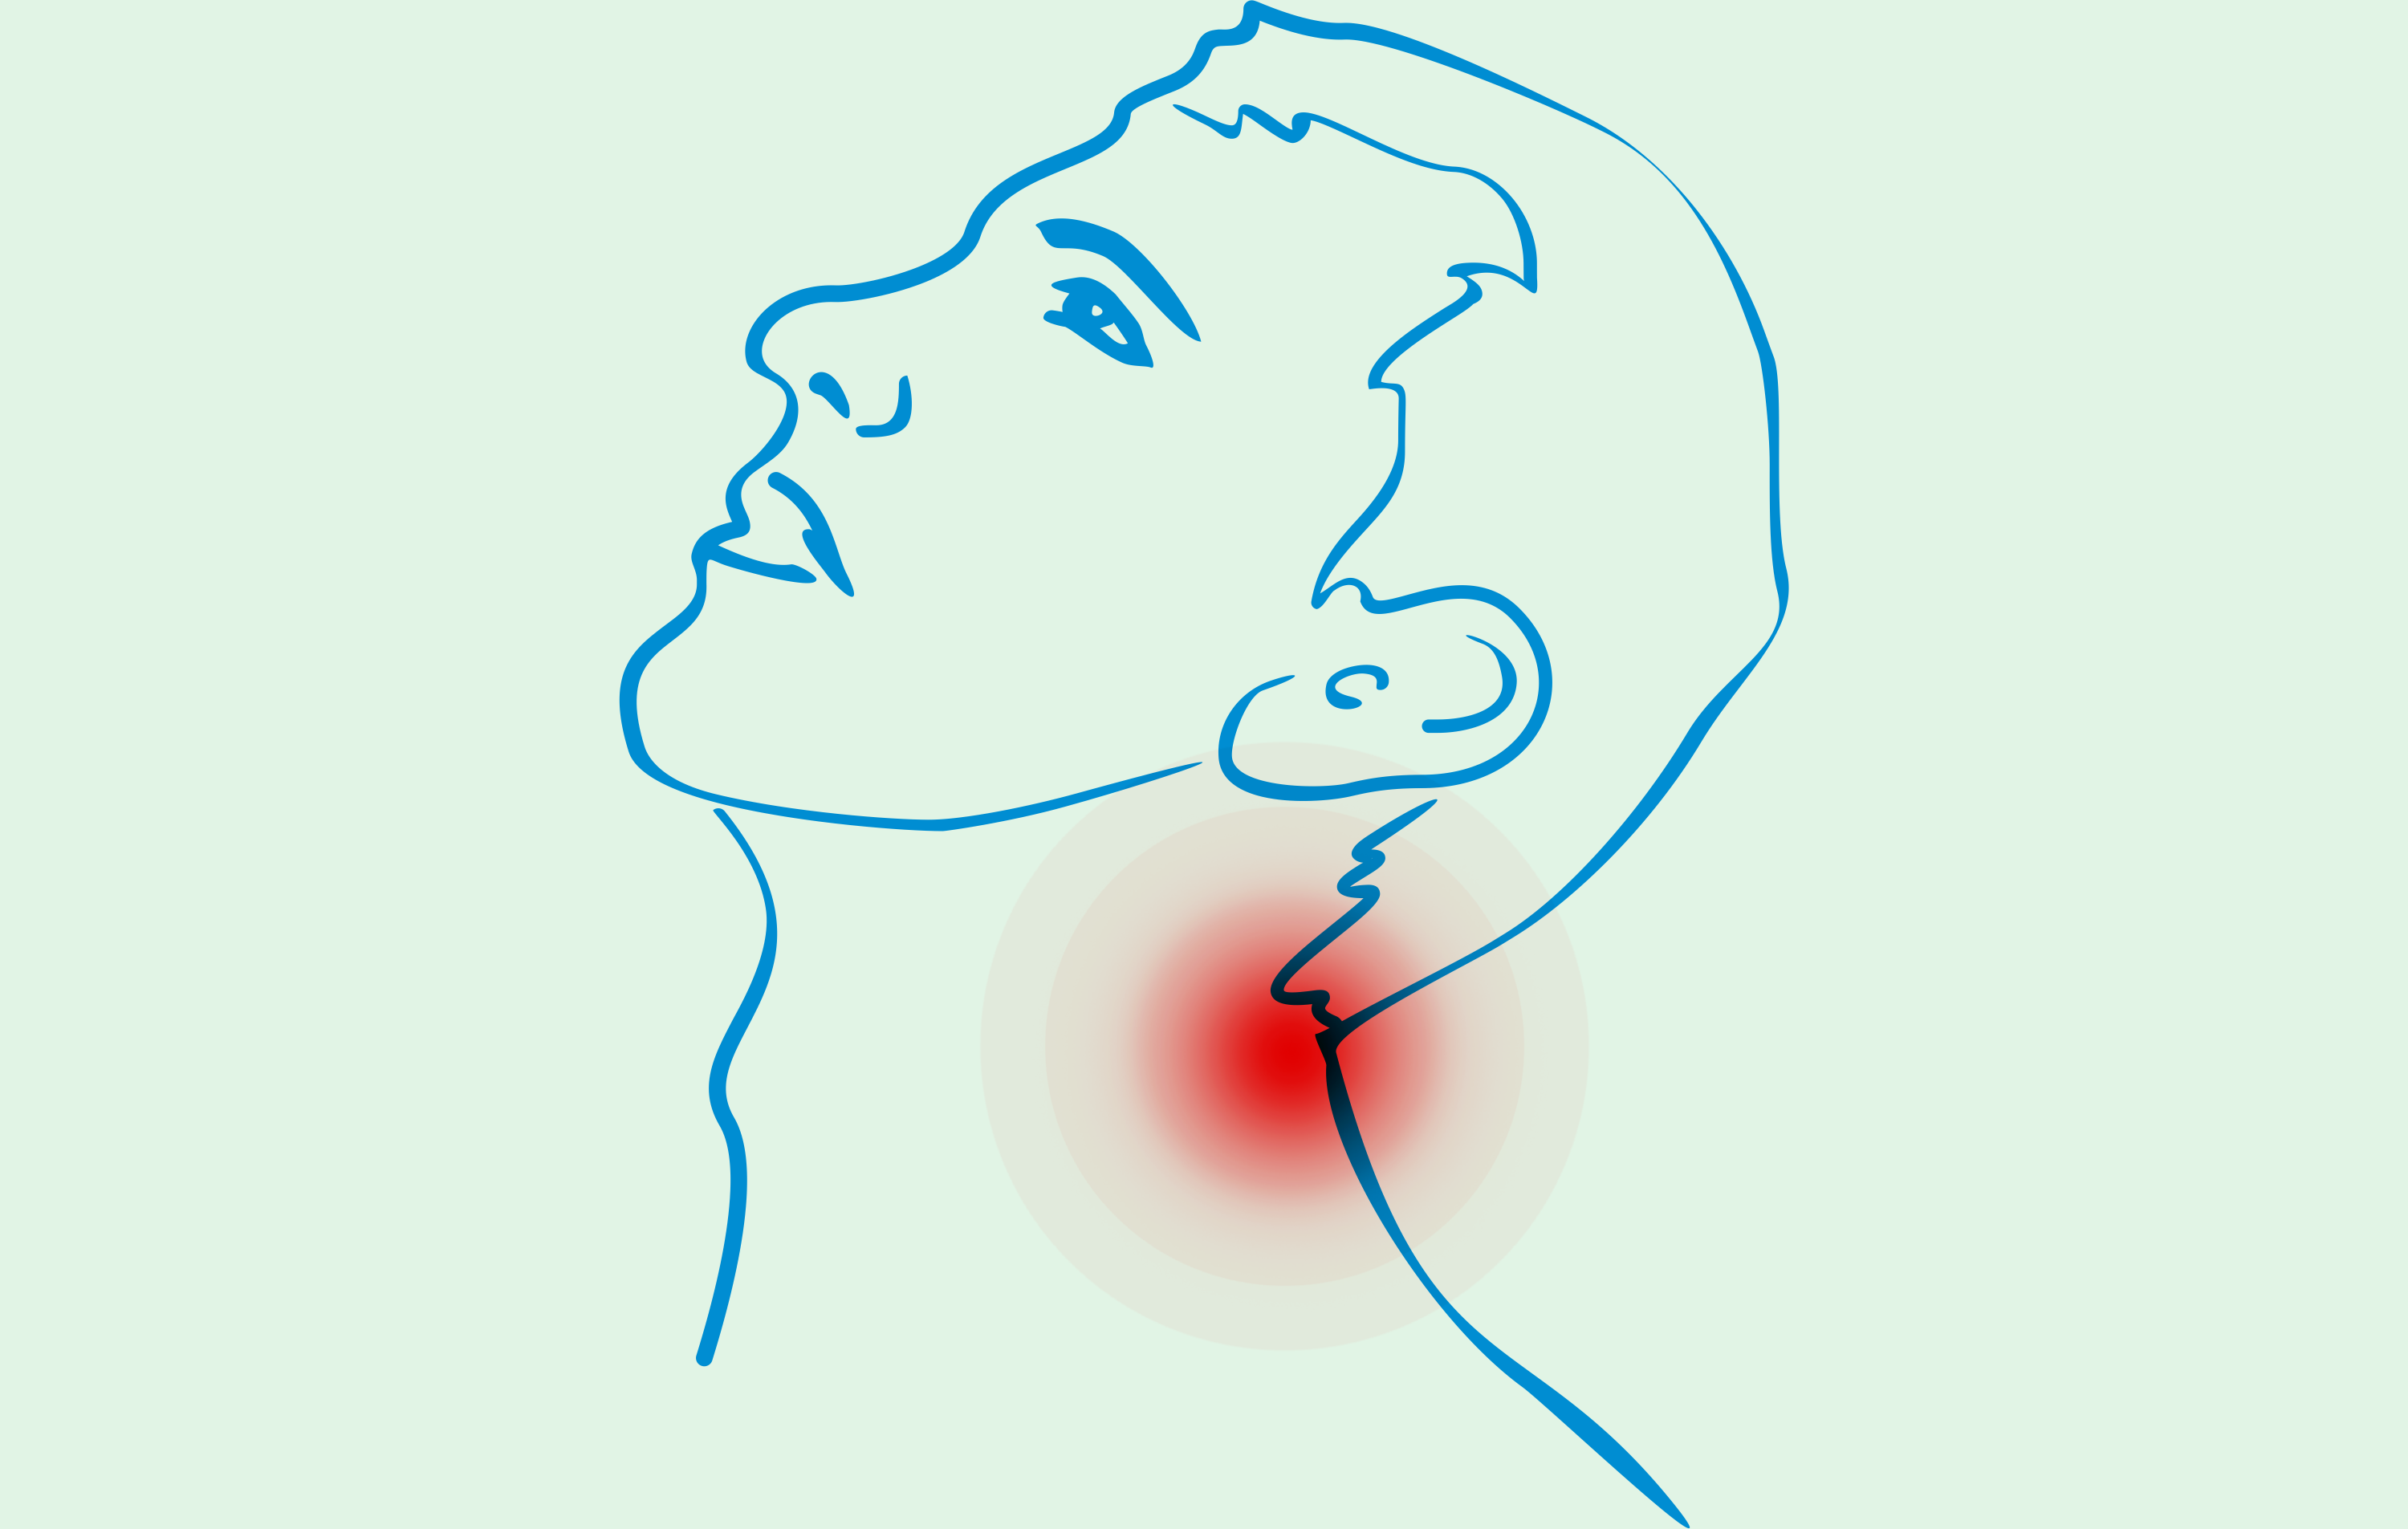 Neck Pain Symptoms, Causes & Treatments